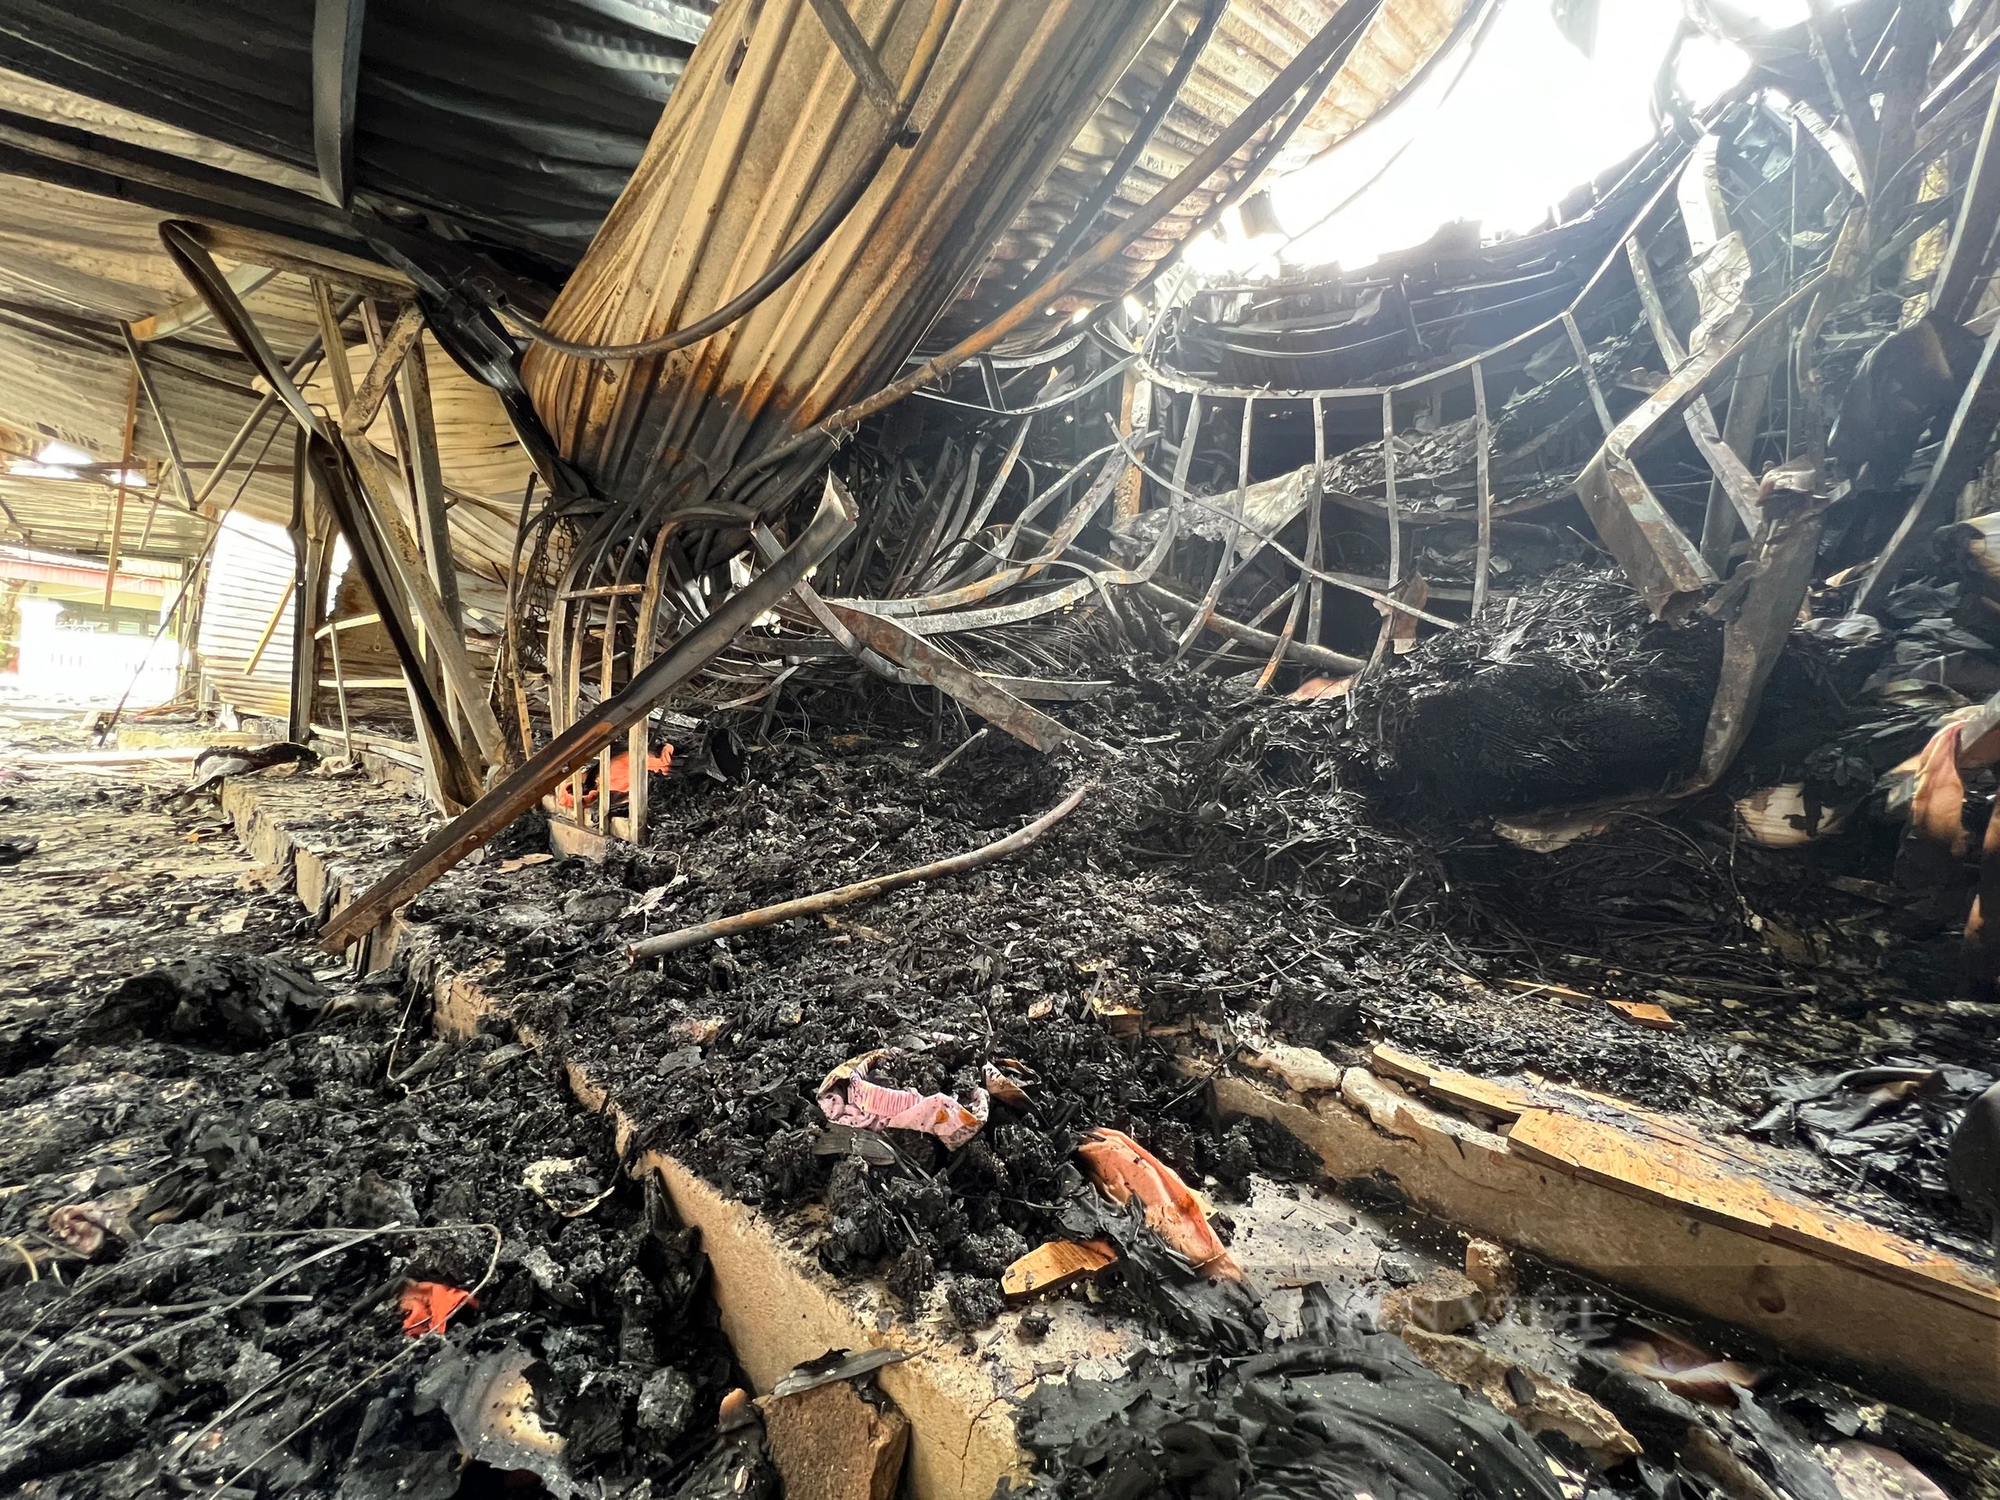 Khung cảnh tan hoang sau vụ cháy chợ Hàng Trạm, Hòa Bình- Ảnh 5.